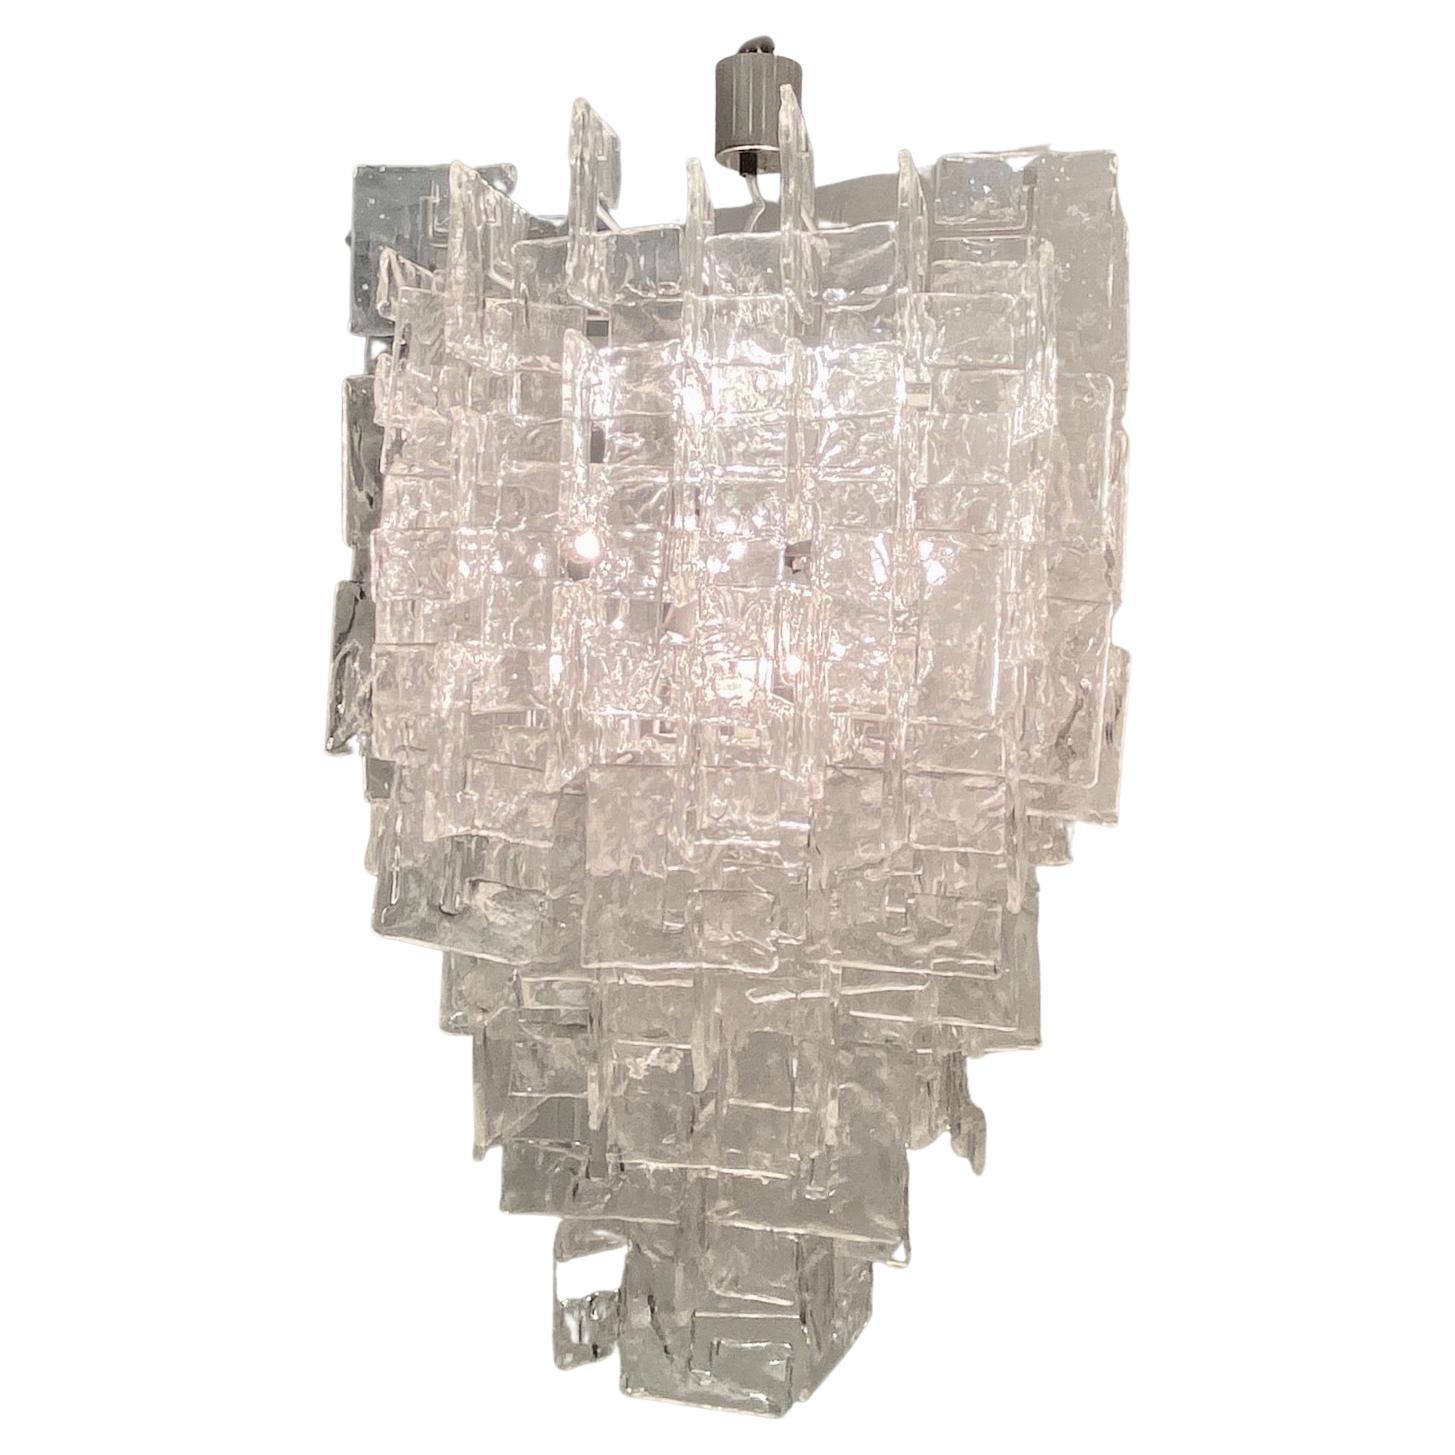 Il s'agit d'un lustre Murano classique à 12 ampoules des années 1960 avec environ 180 éléments en verre transparent Mazzega Murano en forme de C, tous originaux des années 60/70 (avec les éléments en verre d'origine de plus petite taille). La forme